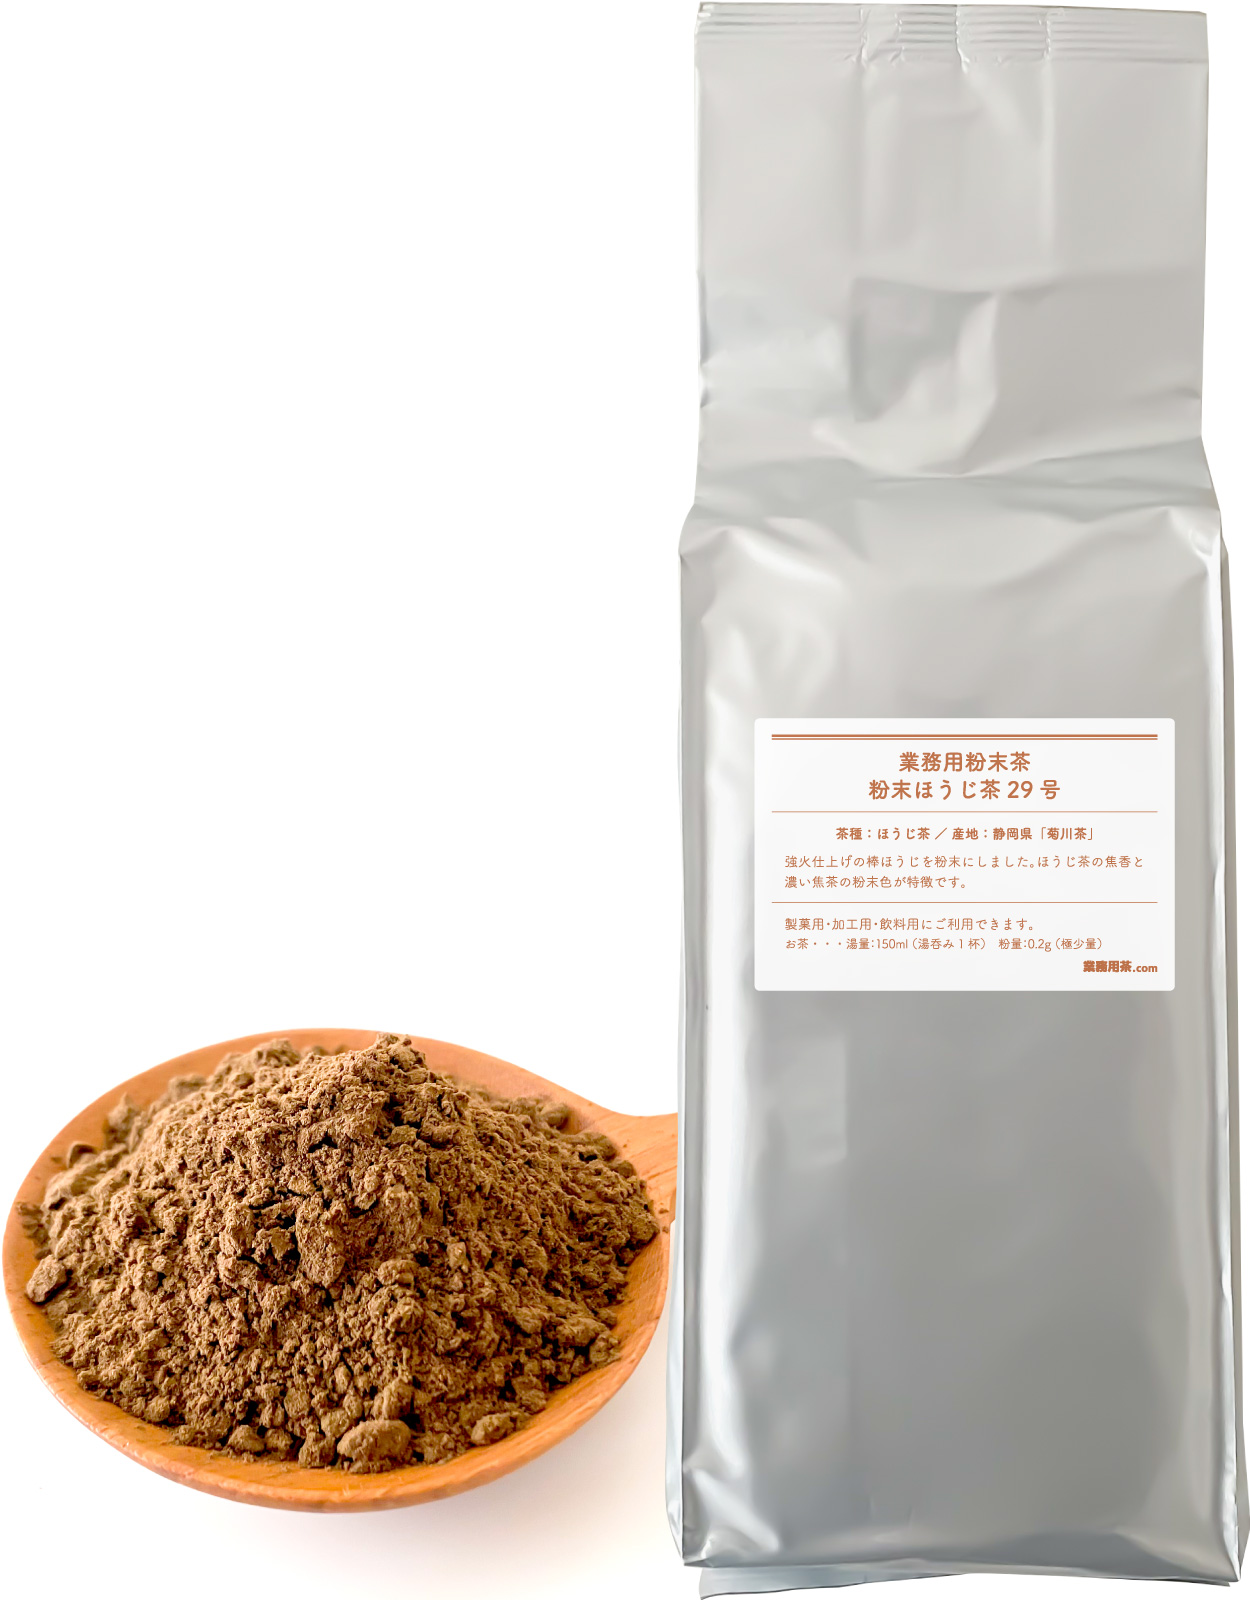 粉末ほうじ茶29号 1kg ほうじ茶 粉末 パウダー 業務用 静岡県菊川茶